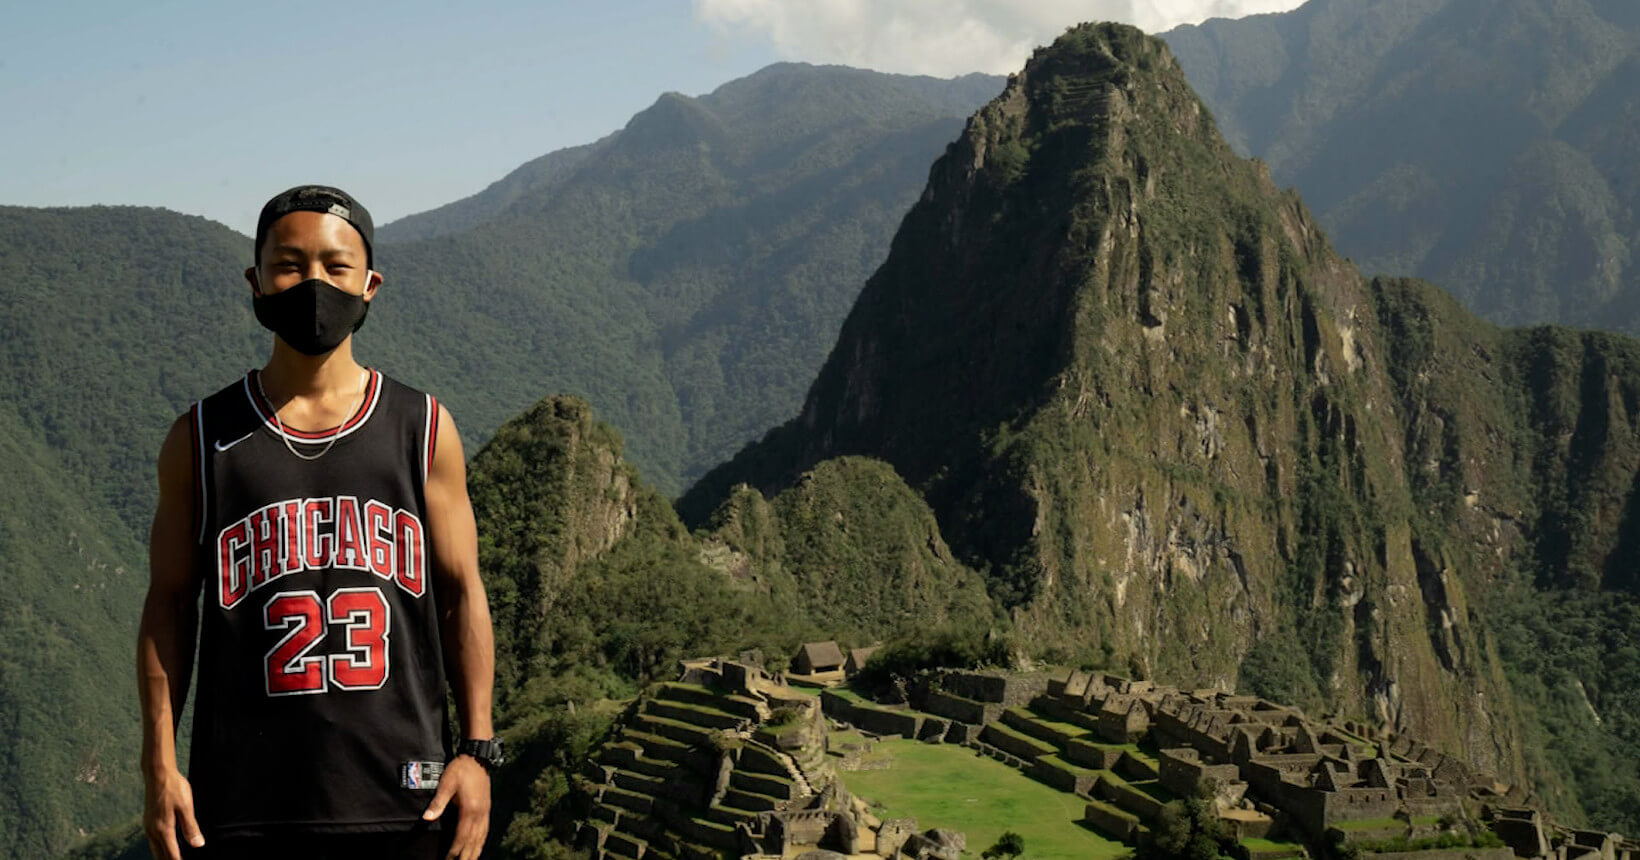 Turista visita Machu Picchu sozinho após sete meses de espera